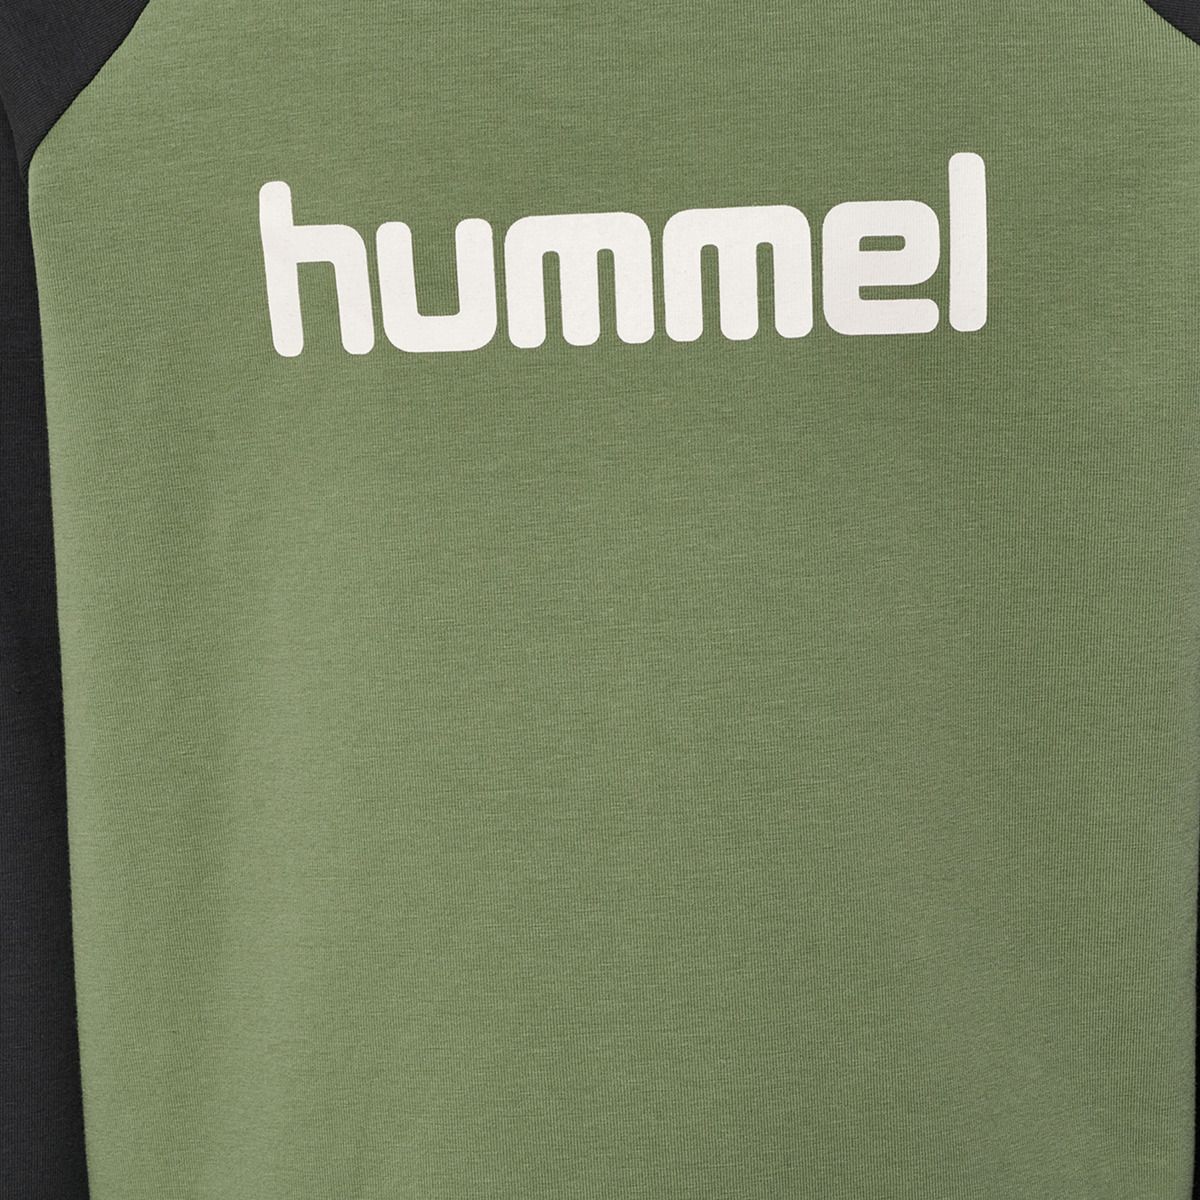 Hummel Boys Jungen T-Shirt